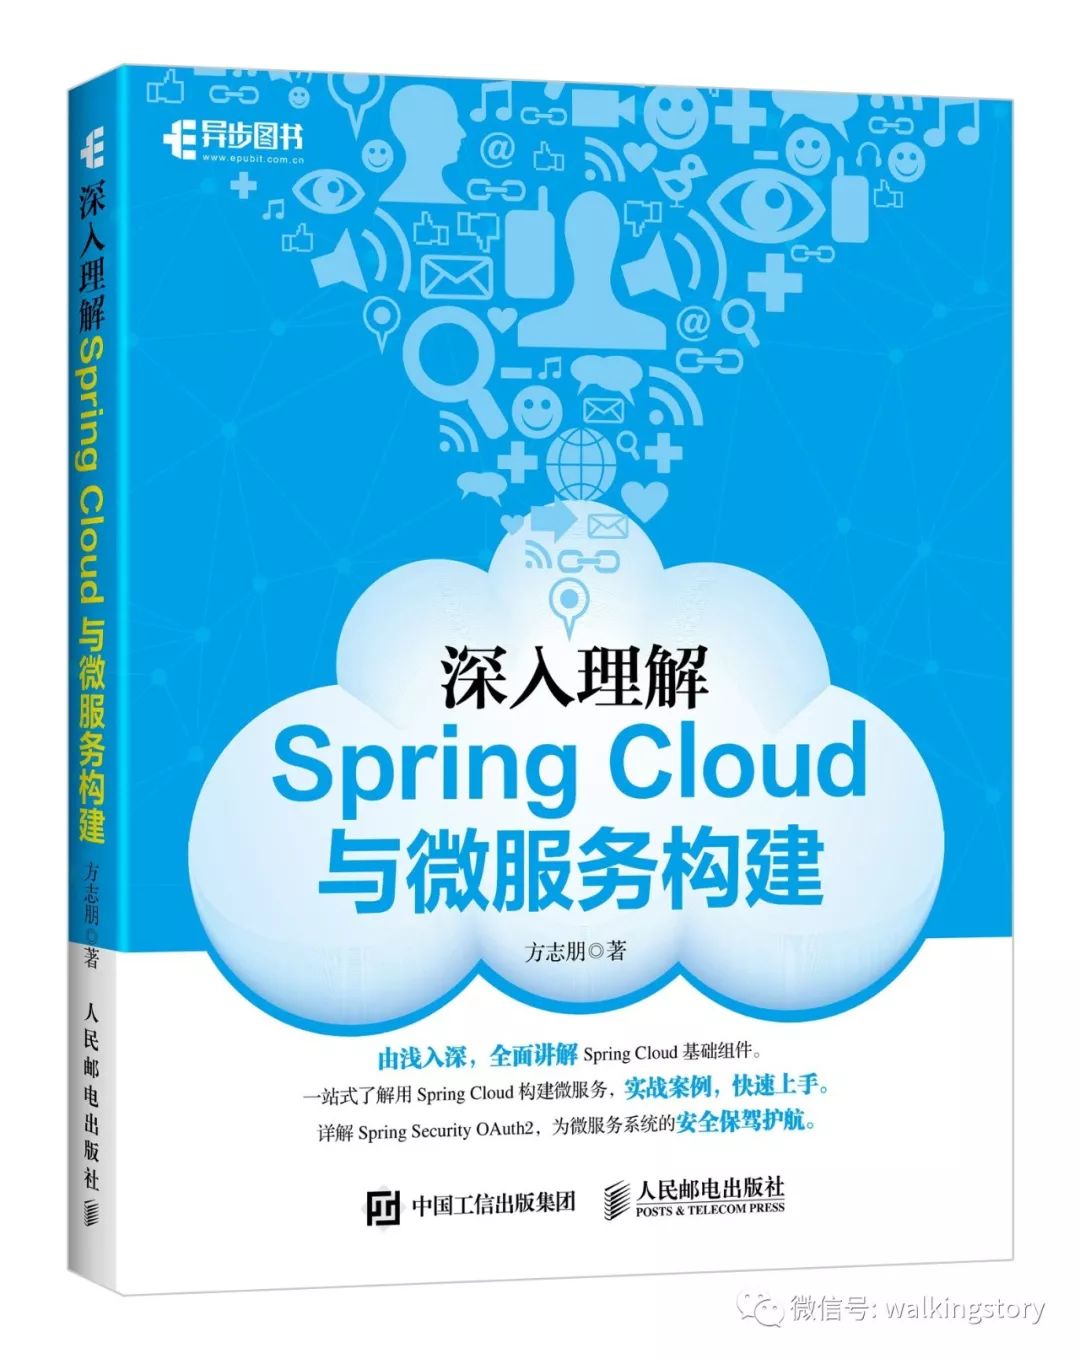 《深入理解Spring Cloud与微服务构建》出版啦！